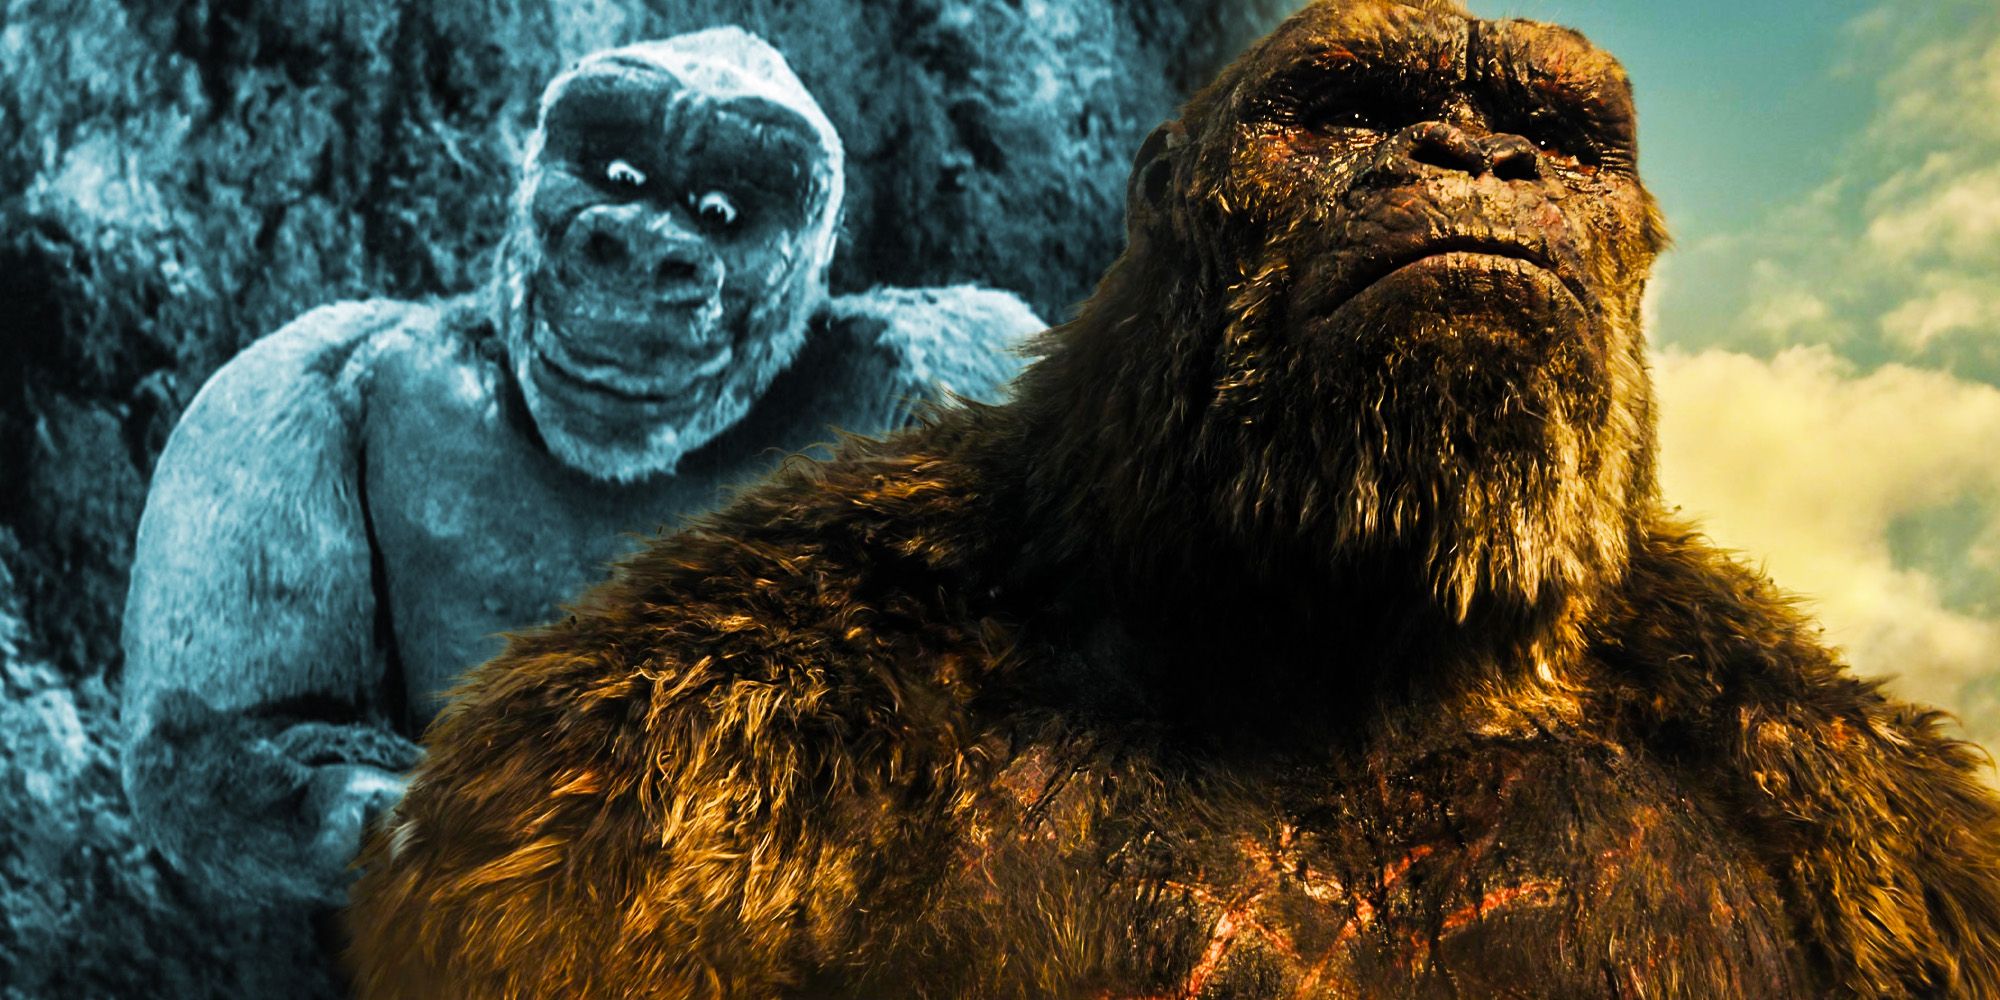 Se rumorea que la película MonsterVerse cambia el final de GvK de Kong